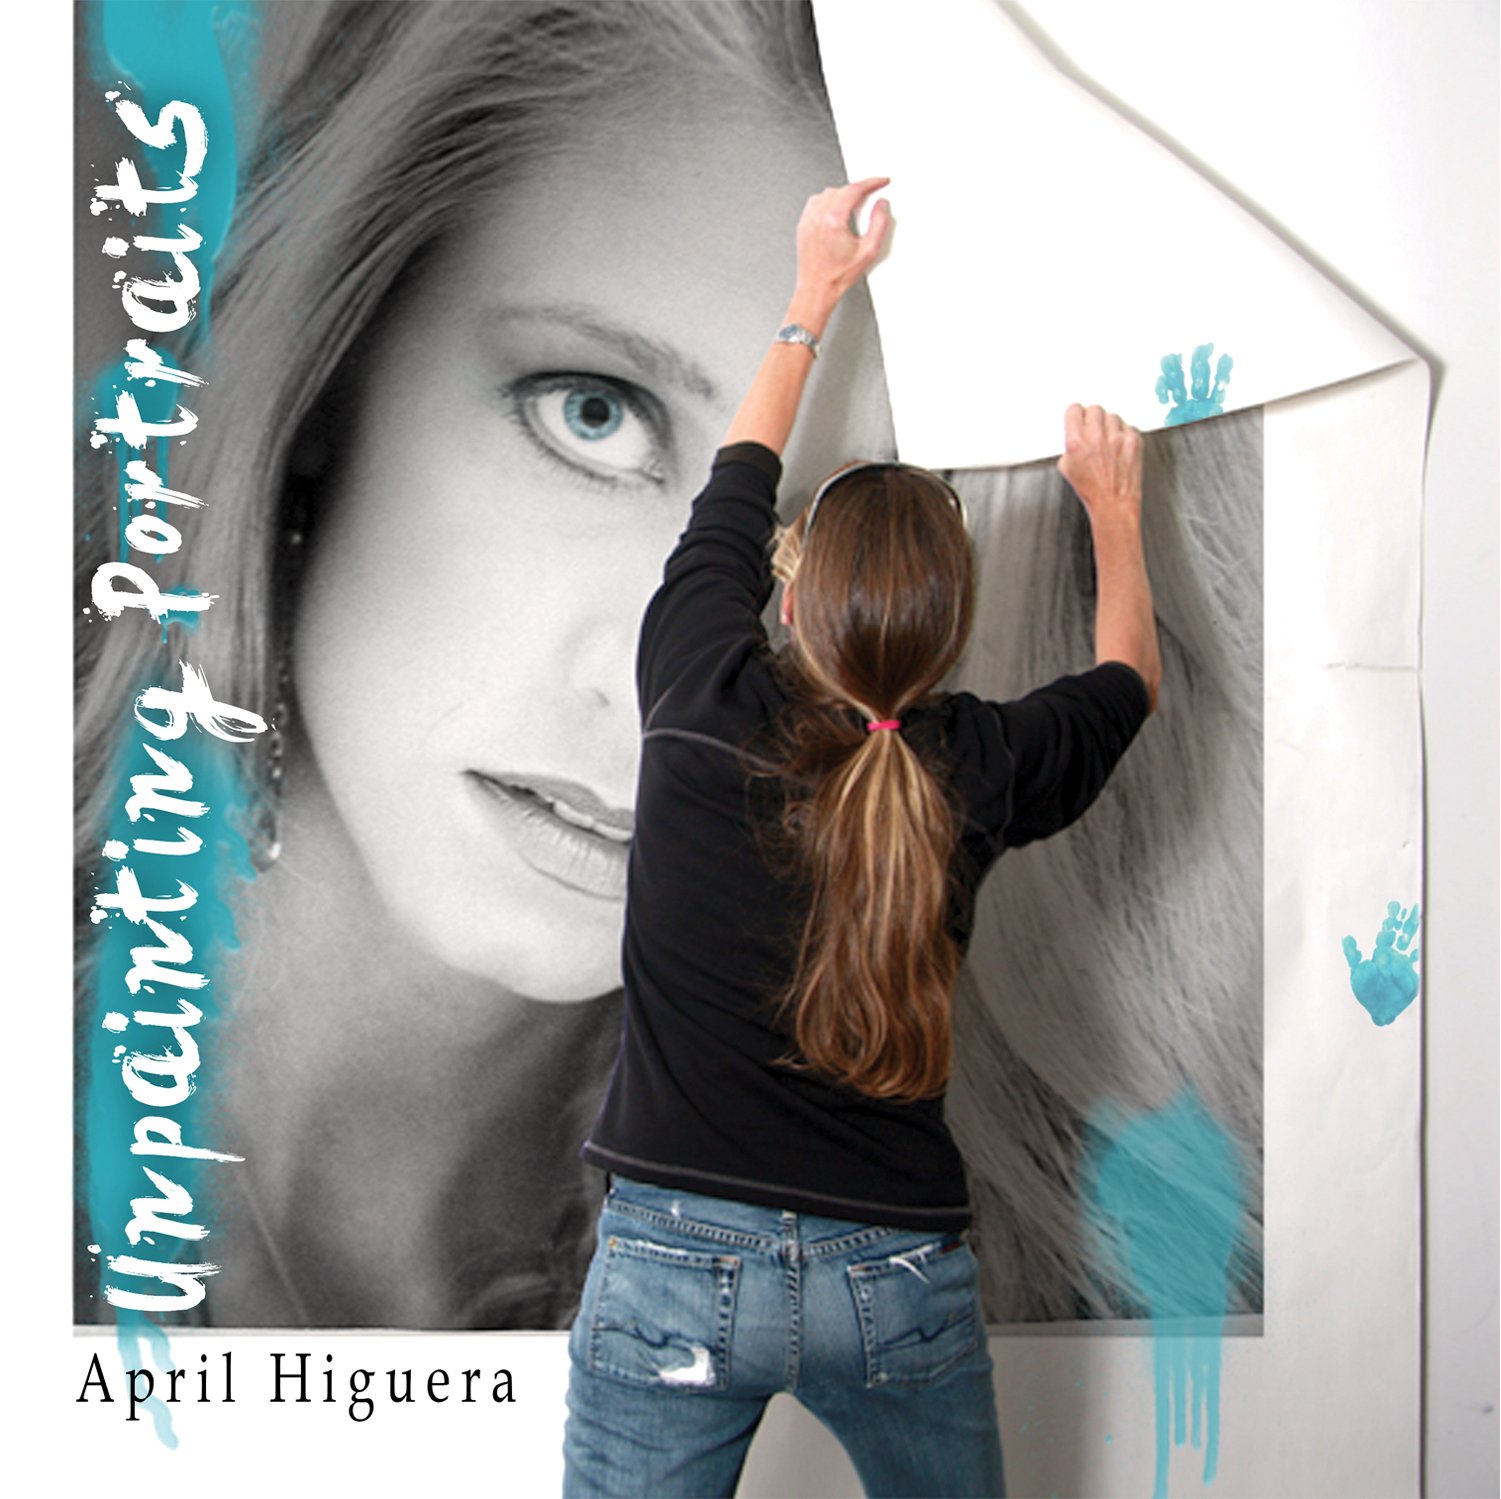 UNPAINTING PORTRAITS - April Higuera